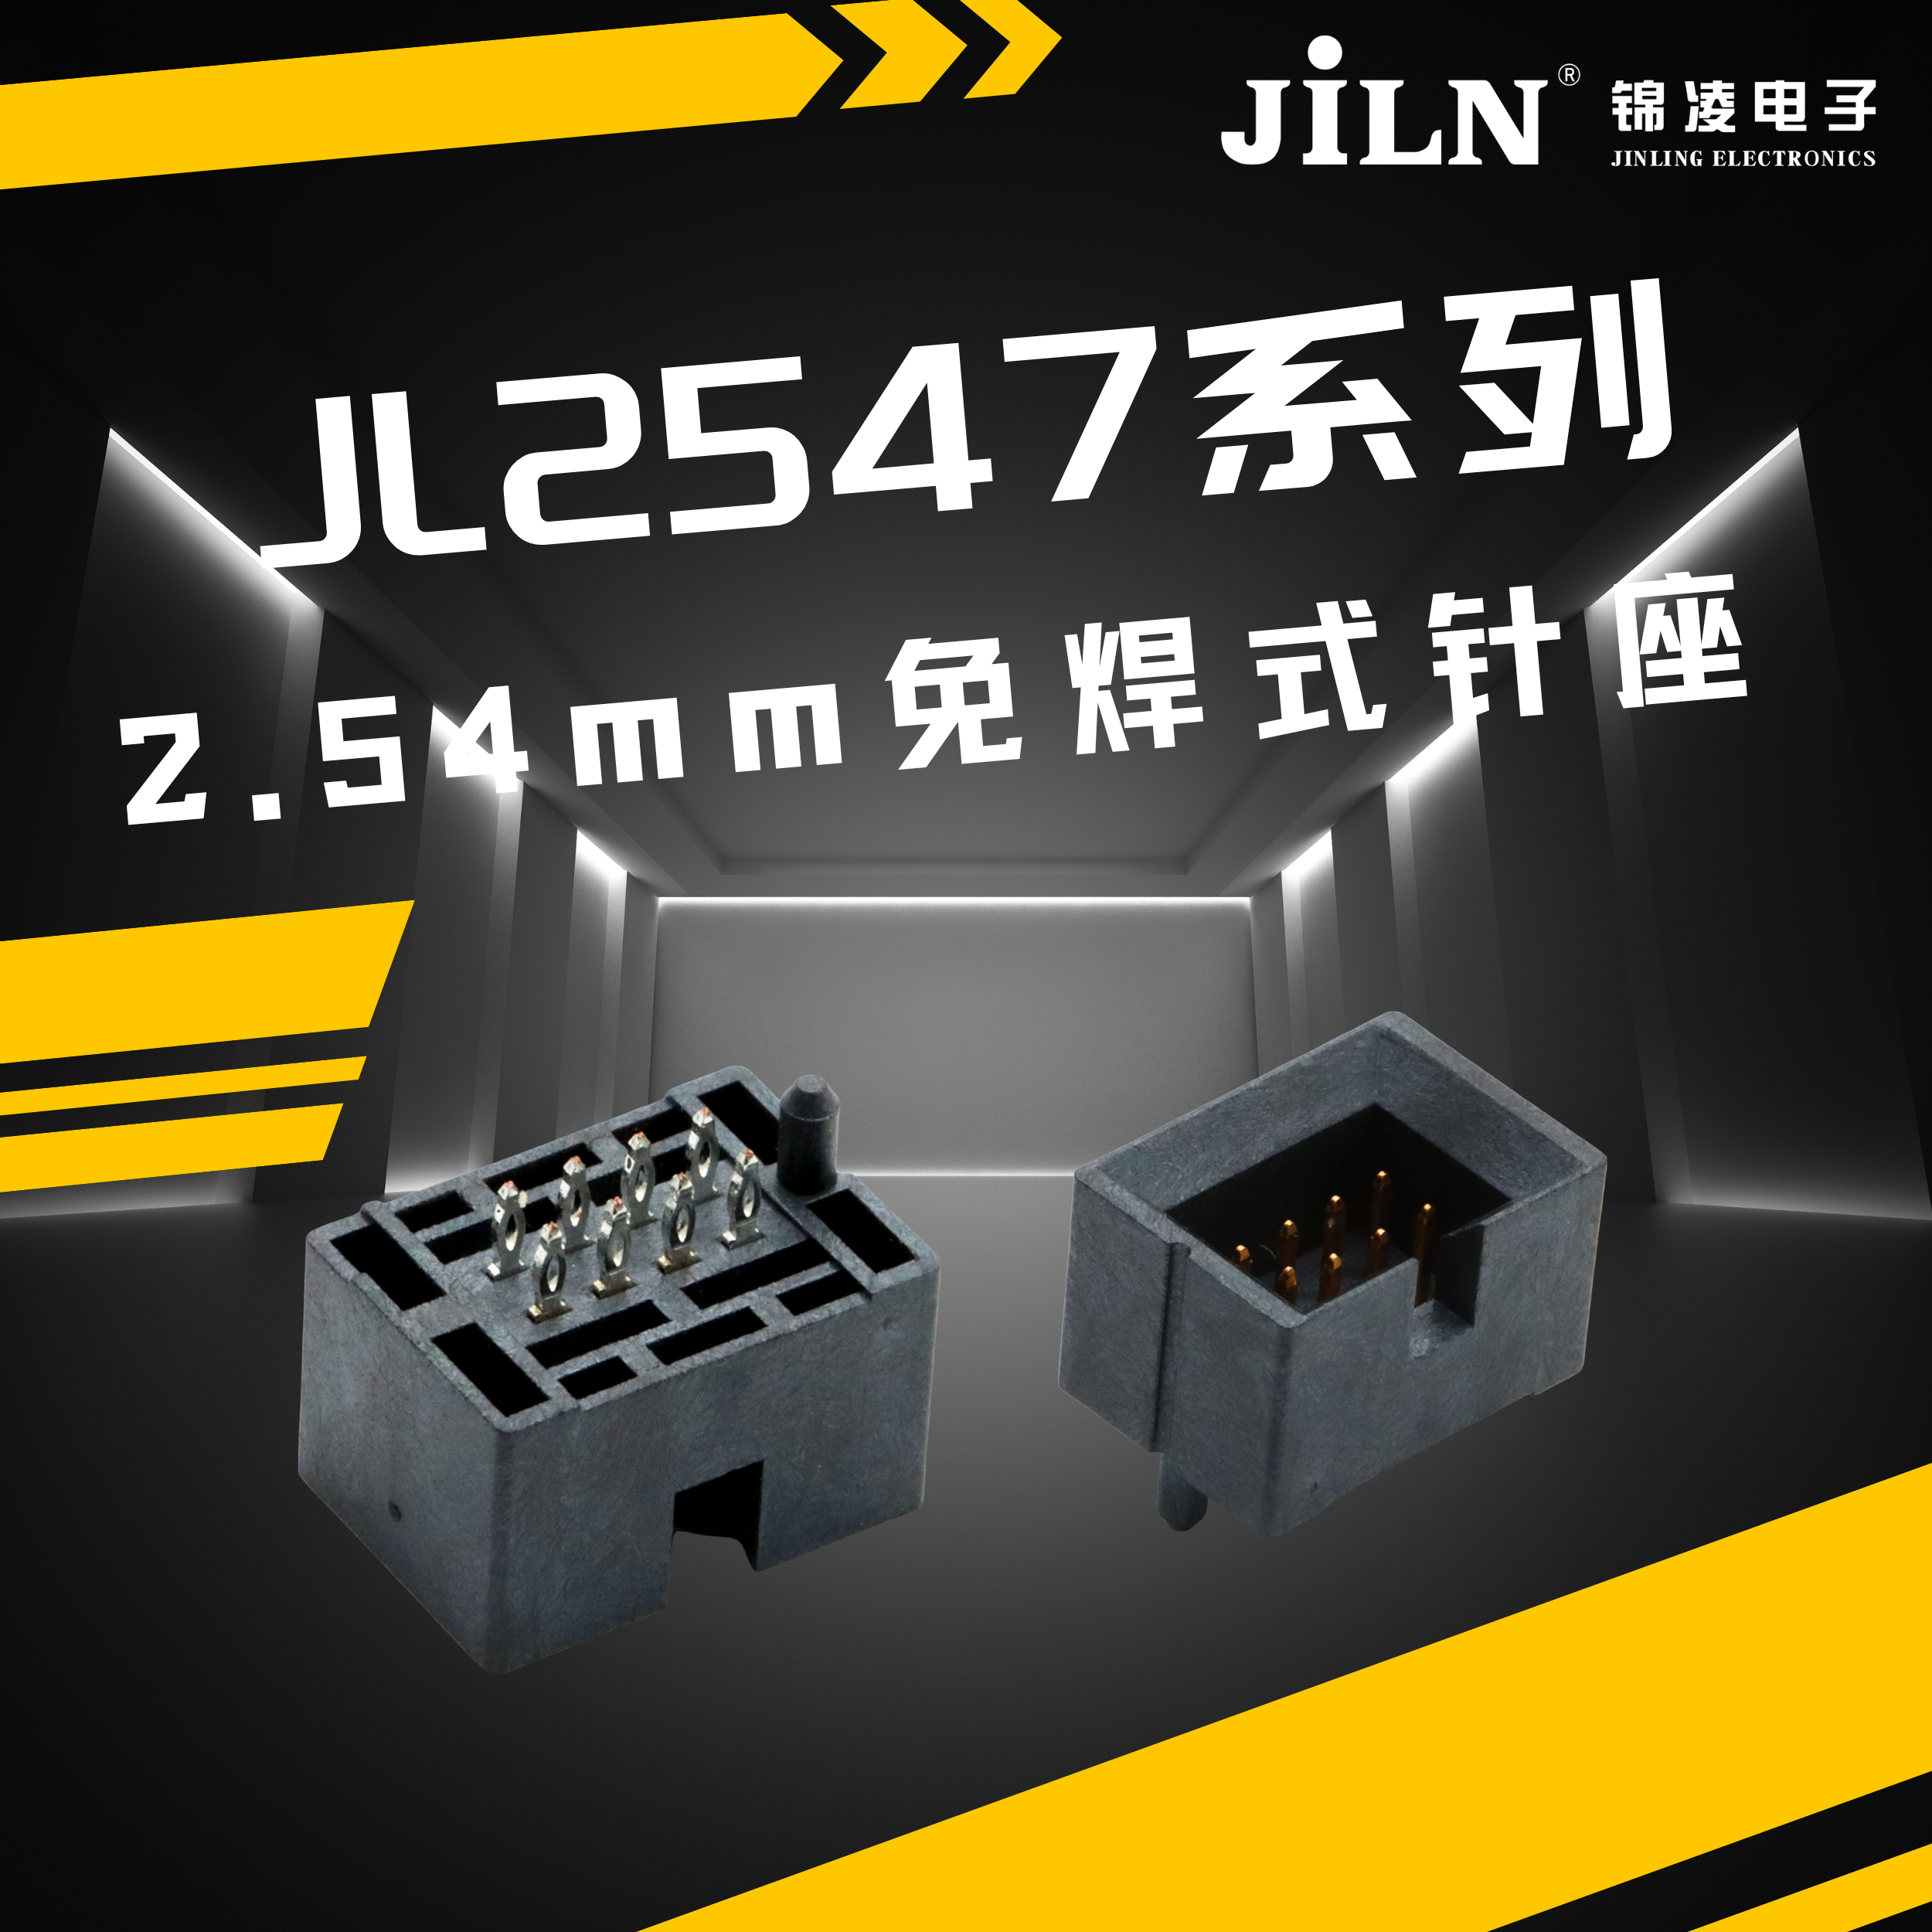 锦凌新品速递 | 2.54mm免焊式针座(JL2547系列)——连接技术的革新